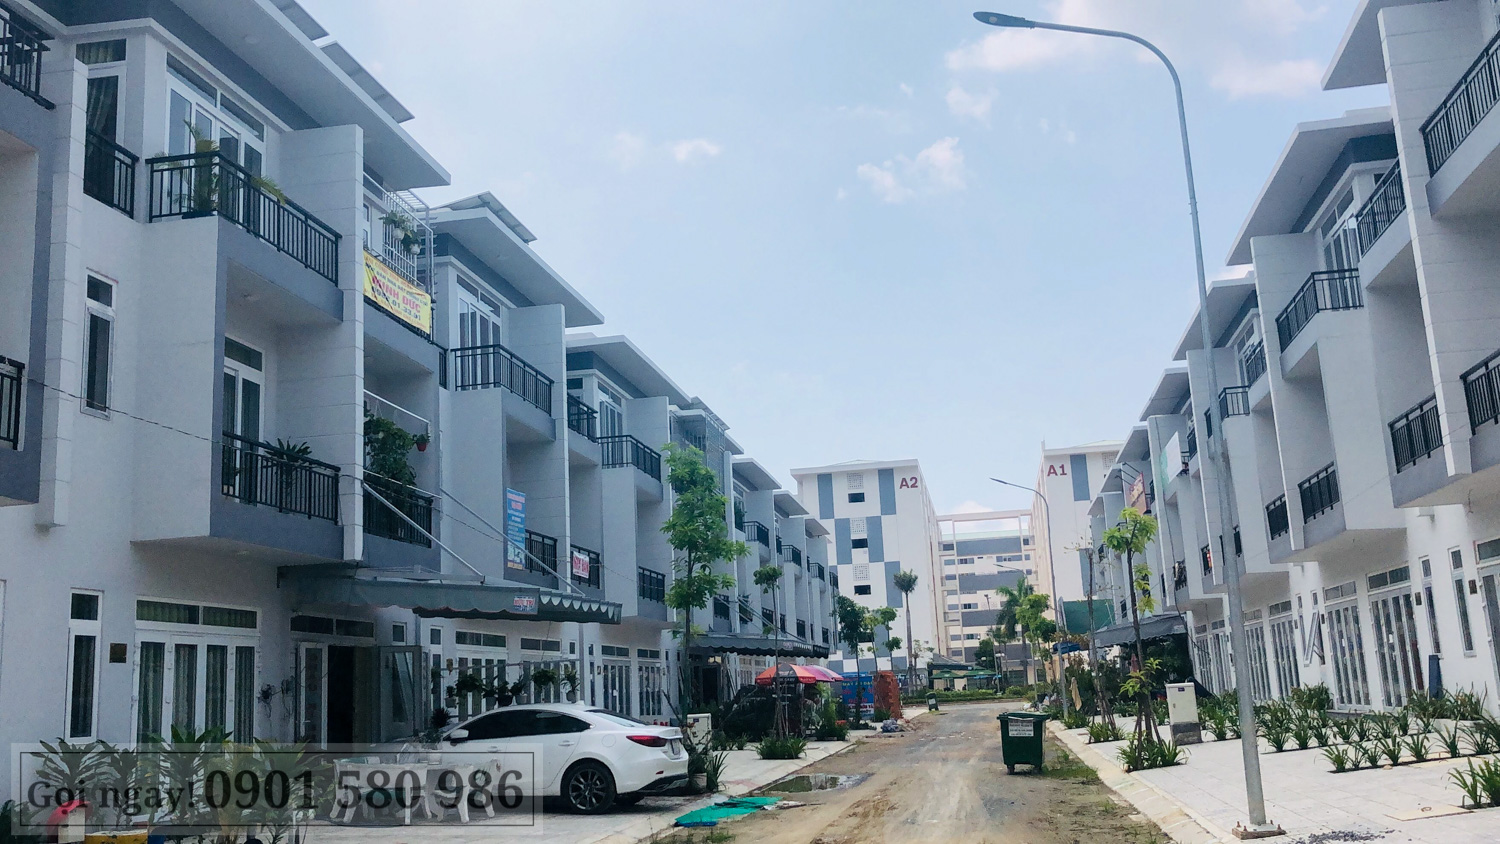 Cập nhật tiến độ dự án Phúc An City - Trần Anh Long An tháng 10/2019